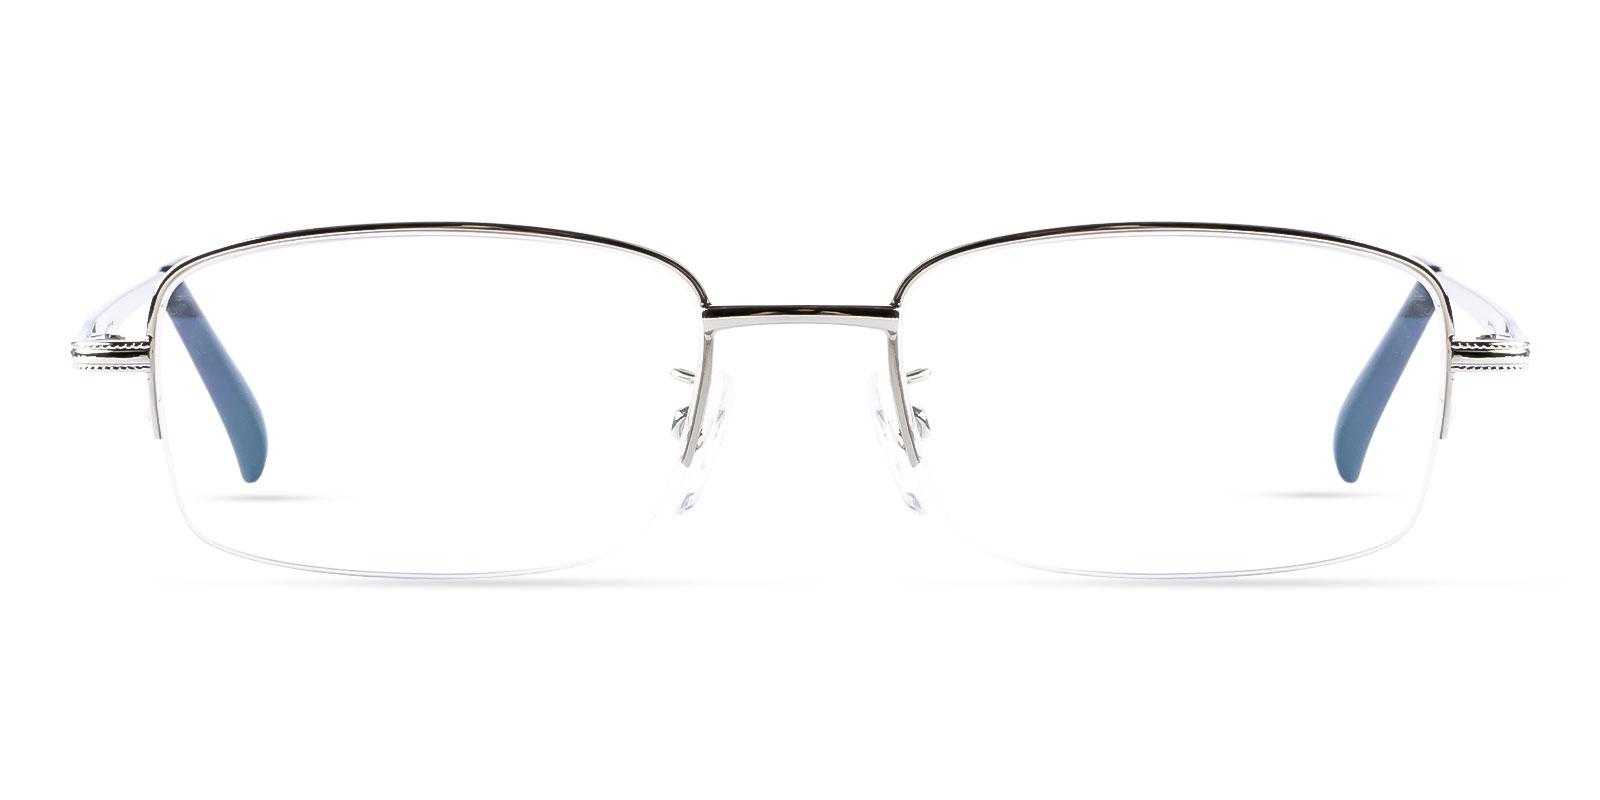 Gabon Silver Metal Eyeglasses , NosePads Frames from ABBE Glasses